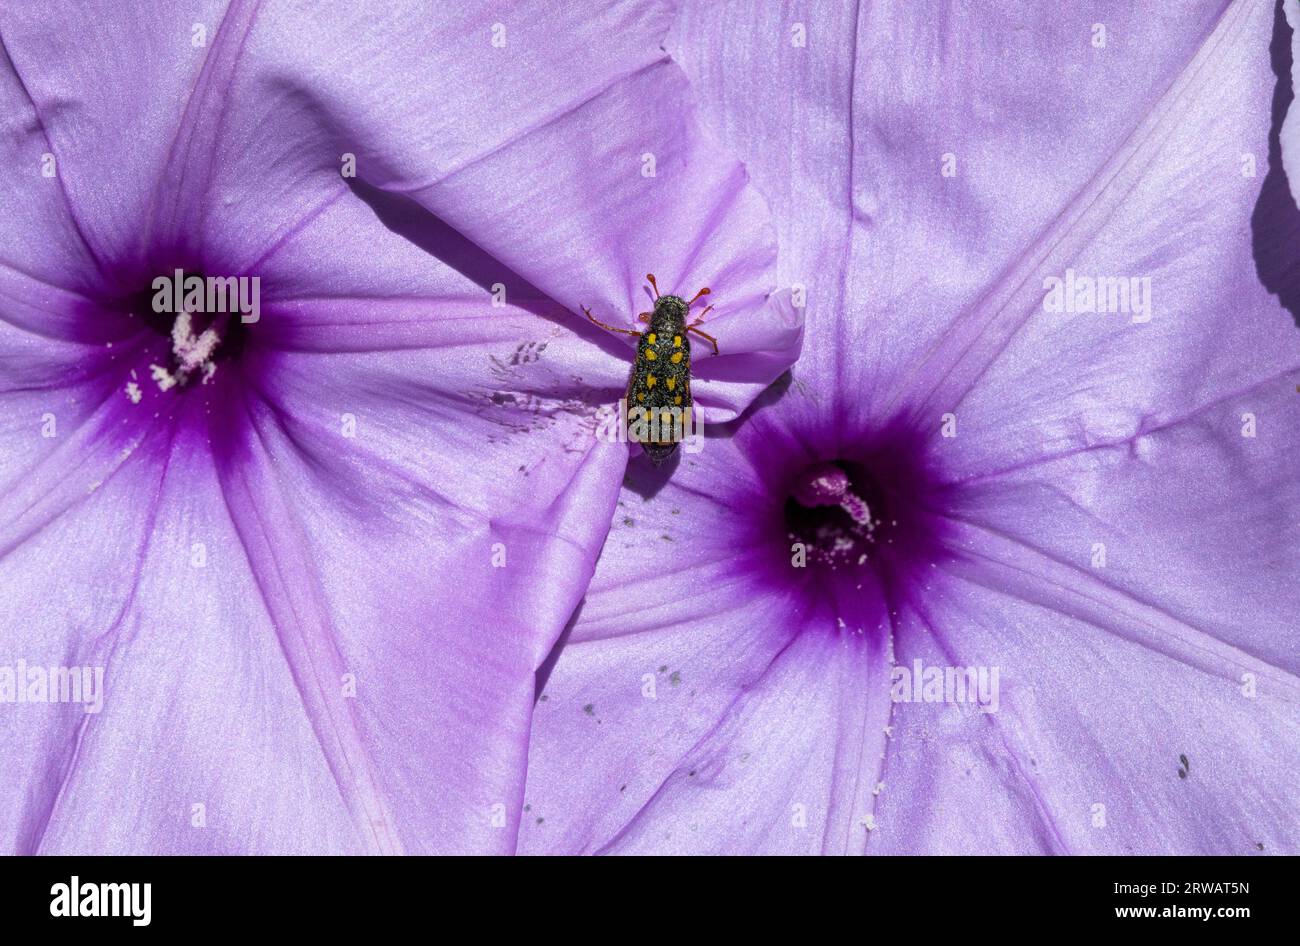 Die lunate Blister Käfer können in der Saison bei gutem Regen und vielen auffälligen Blumen in großer Zahl sichtbar werden. Stockfoto